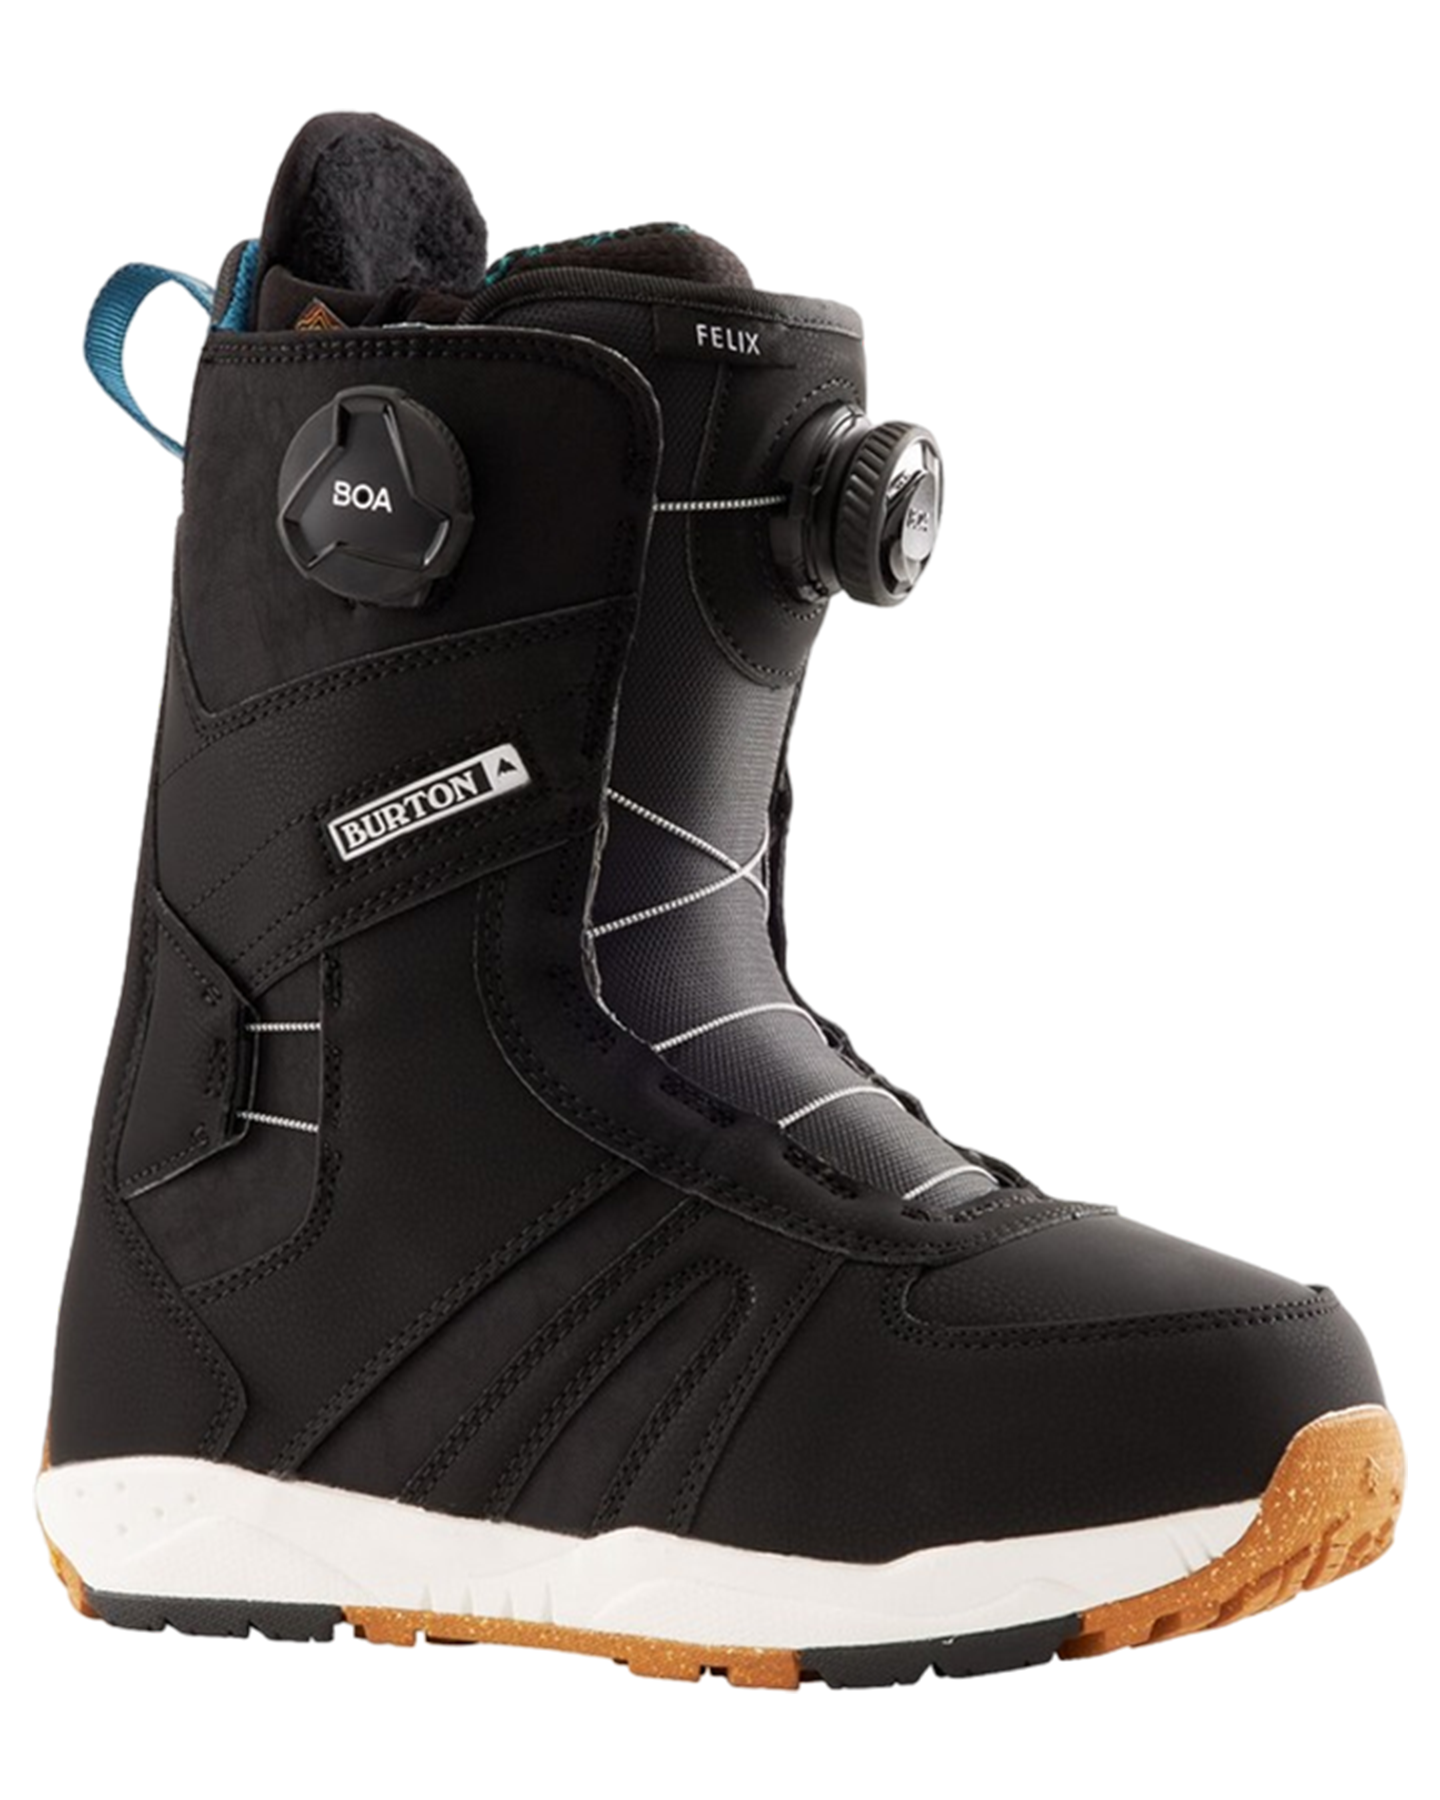 Burton Women's Felix Boa® Snowboard Boots - Black Snowboard Boots - Womens - Trojan Wake Ski Snow